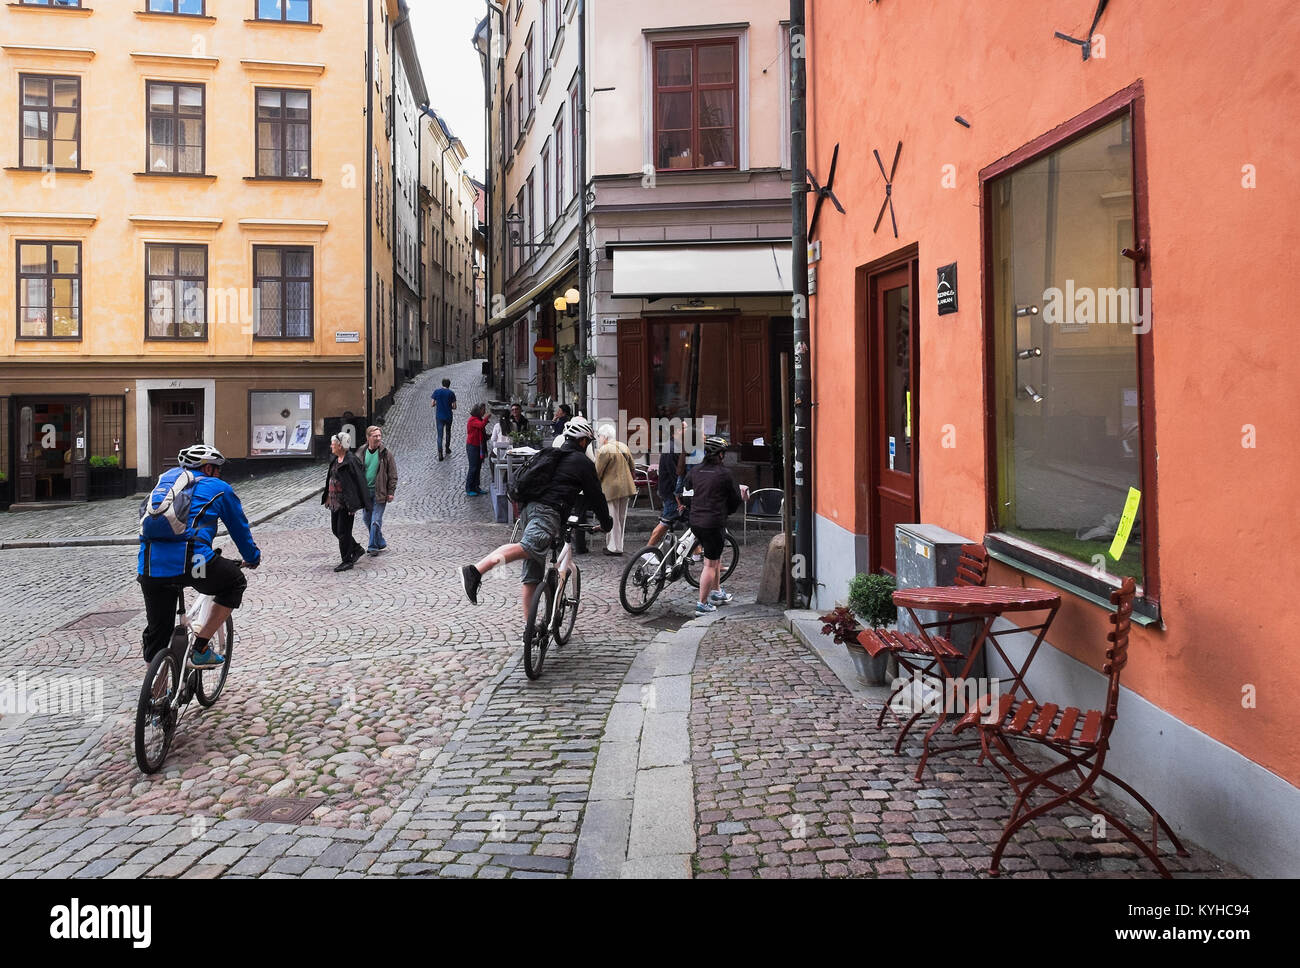 Stockholm, Schweden geführte Gruppe bike Tour durch die engen, kopfsteingepflasterten Gassen der malerischen Stadt Altstadt Gamla Stan, der Altstadt. Stockfoto